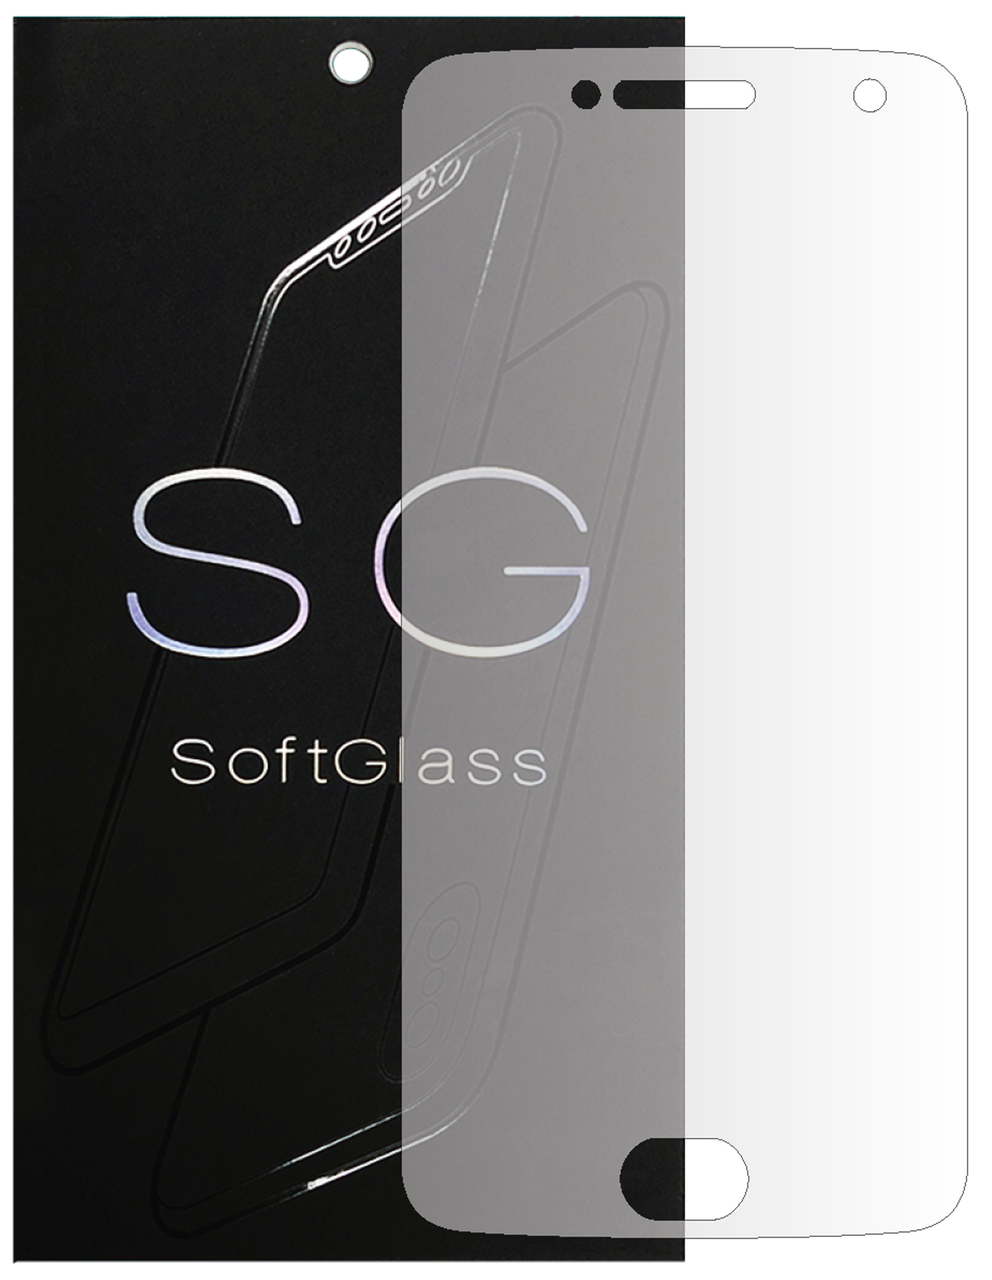 Бронеплівка Motorola G5 Plus XT1685 на екран поліуретанова SoftGlass